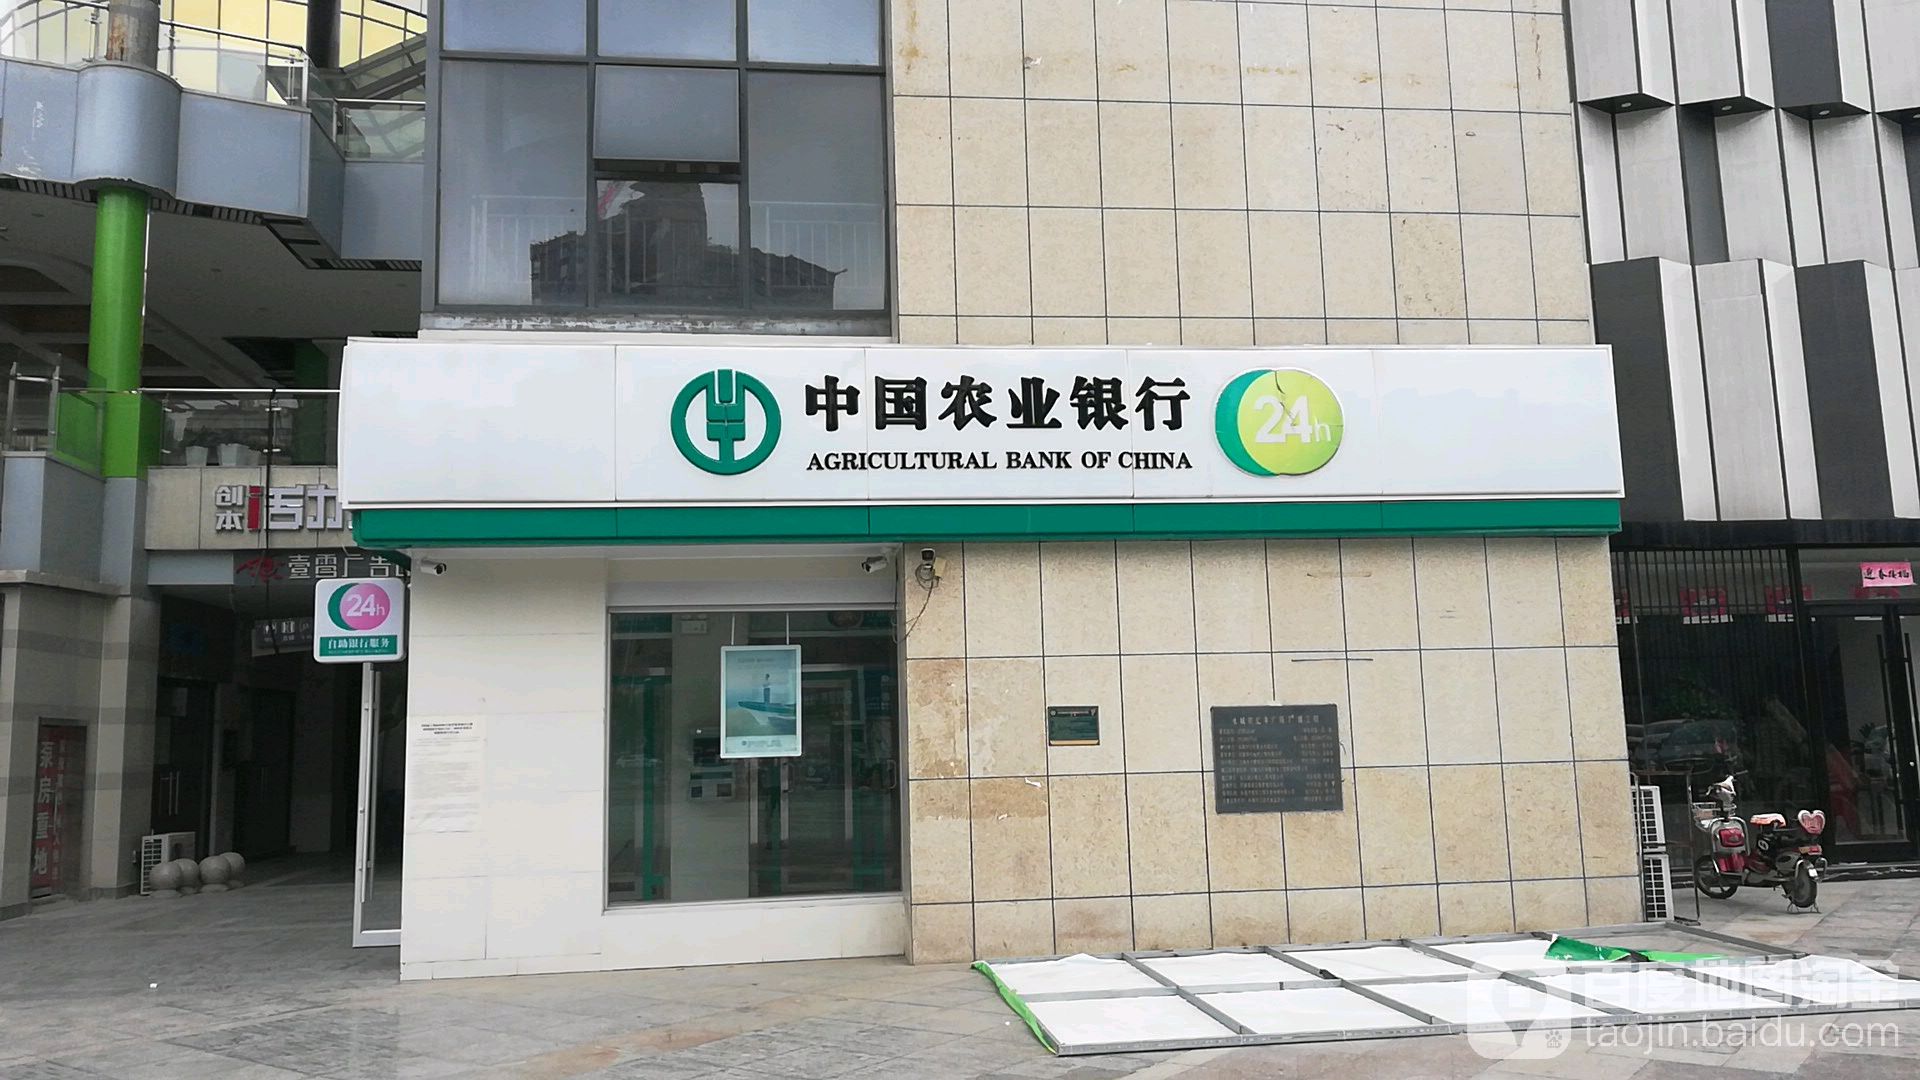 中國農業銀行24小時自助銀行(中原路)